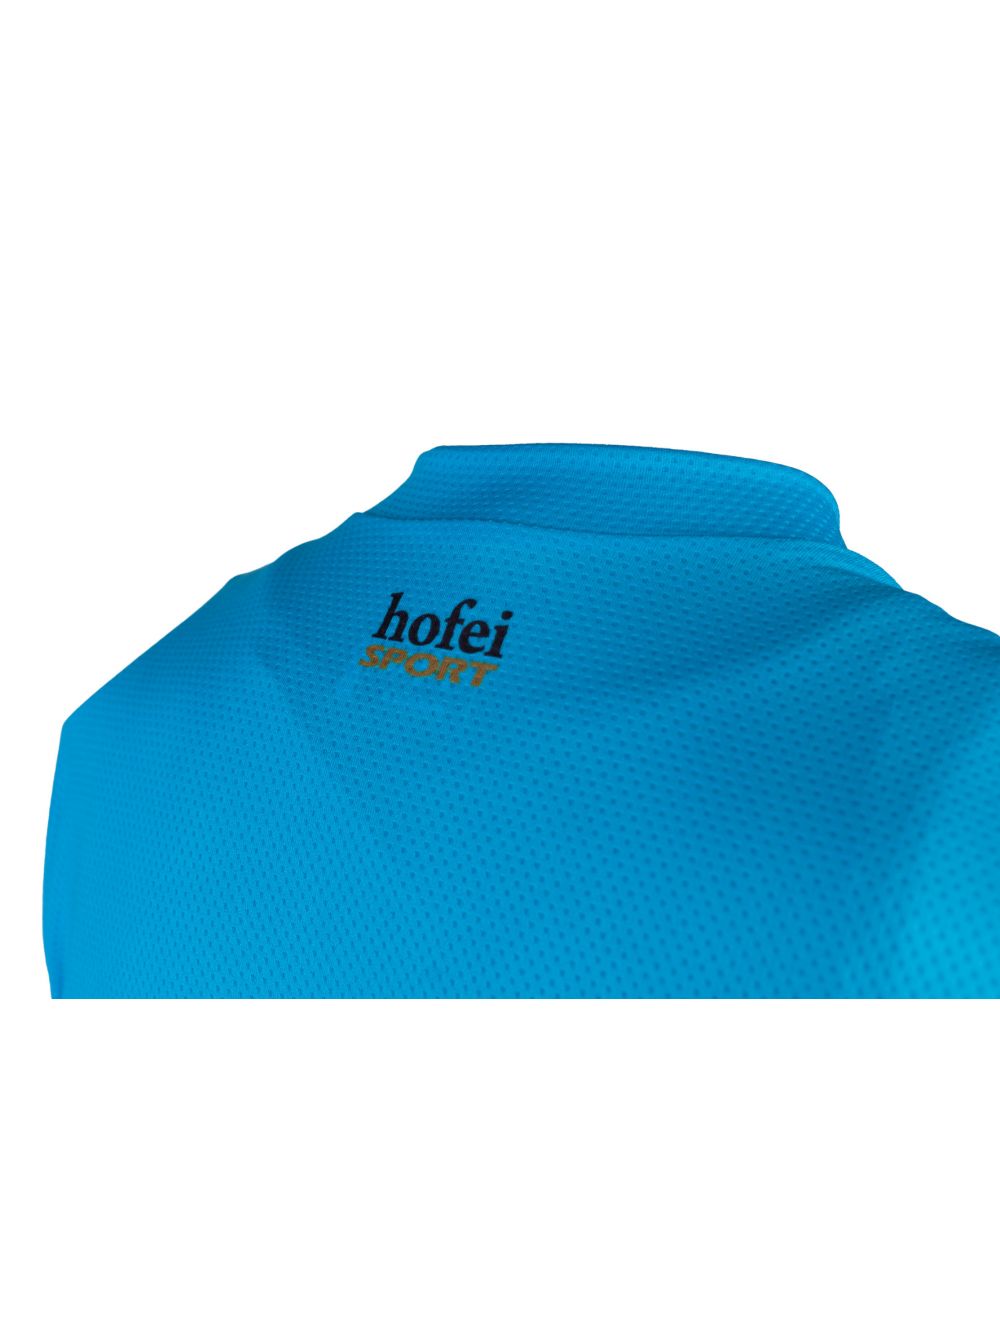 Maloja "Hofei" cycling sports shirt for men